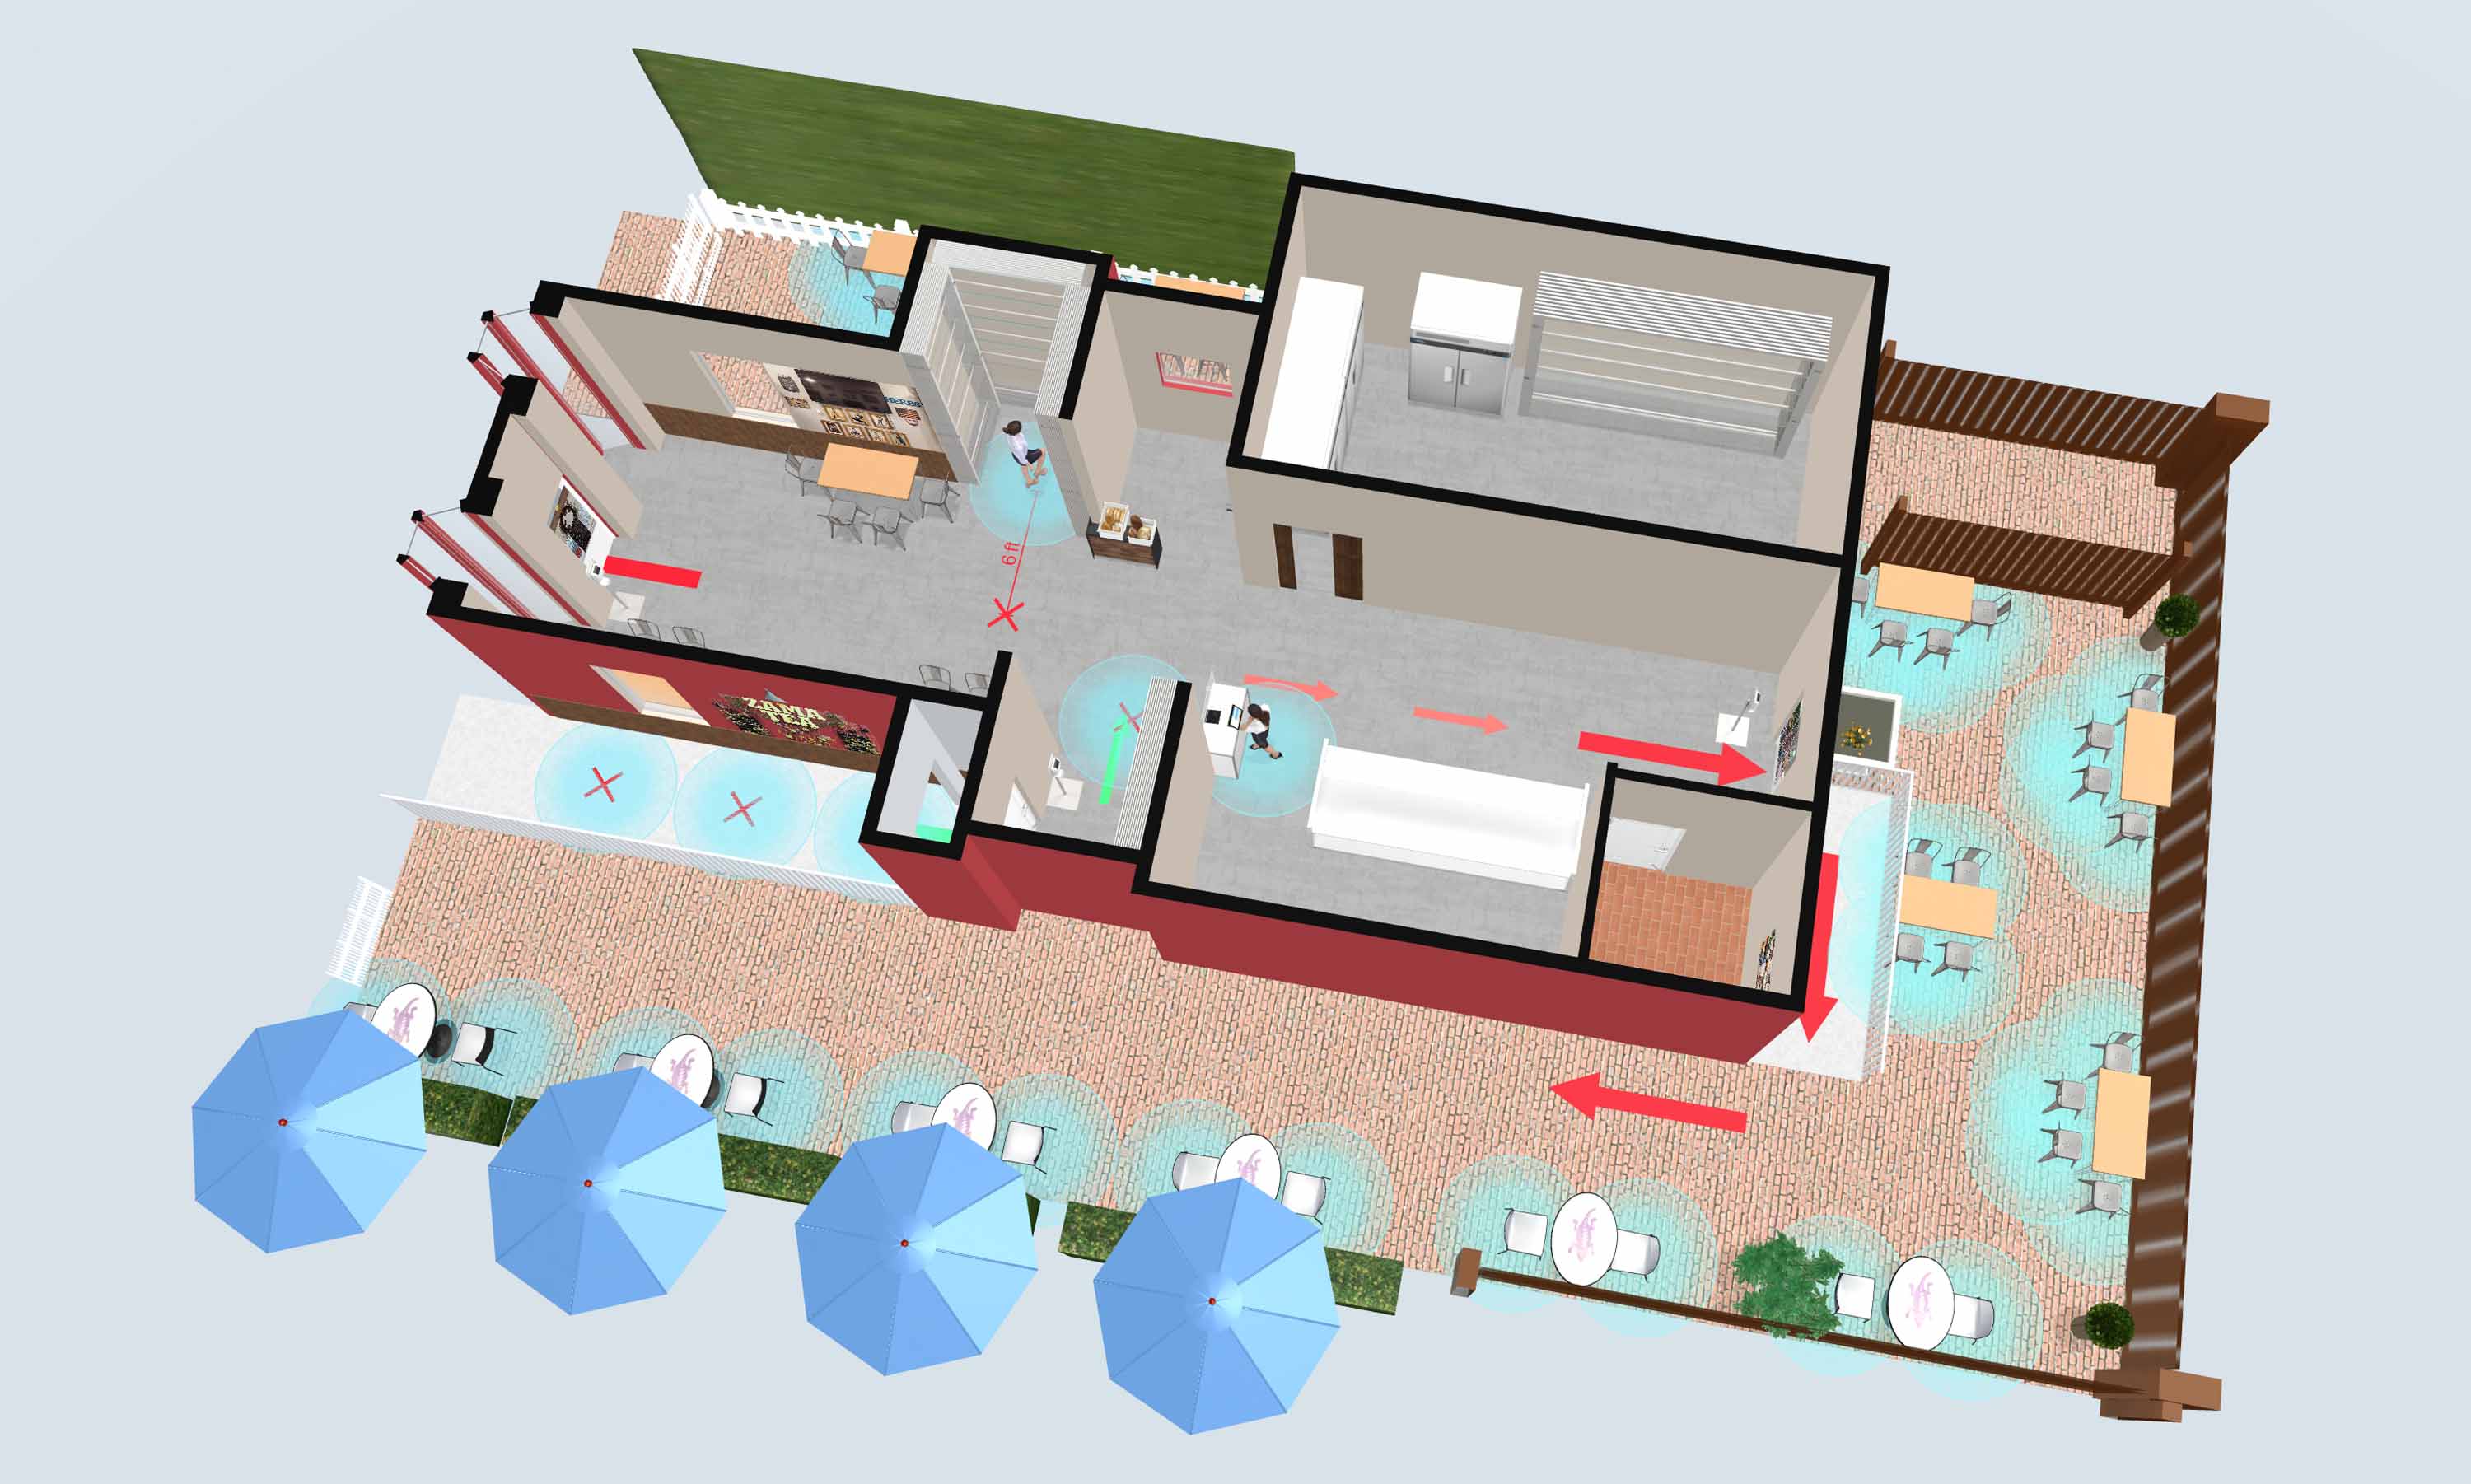 3D floor plans for outdoor social distancing